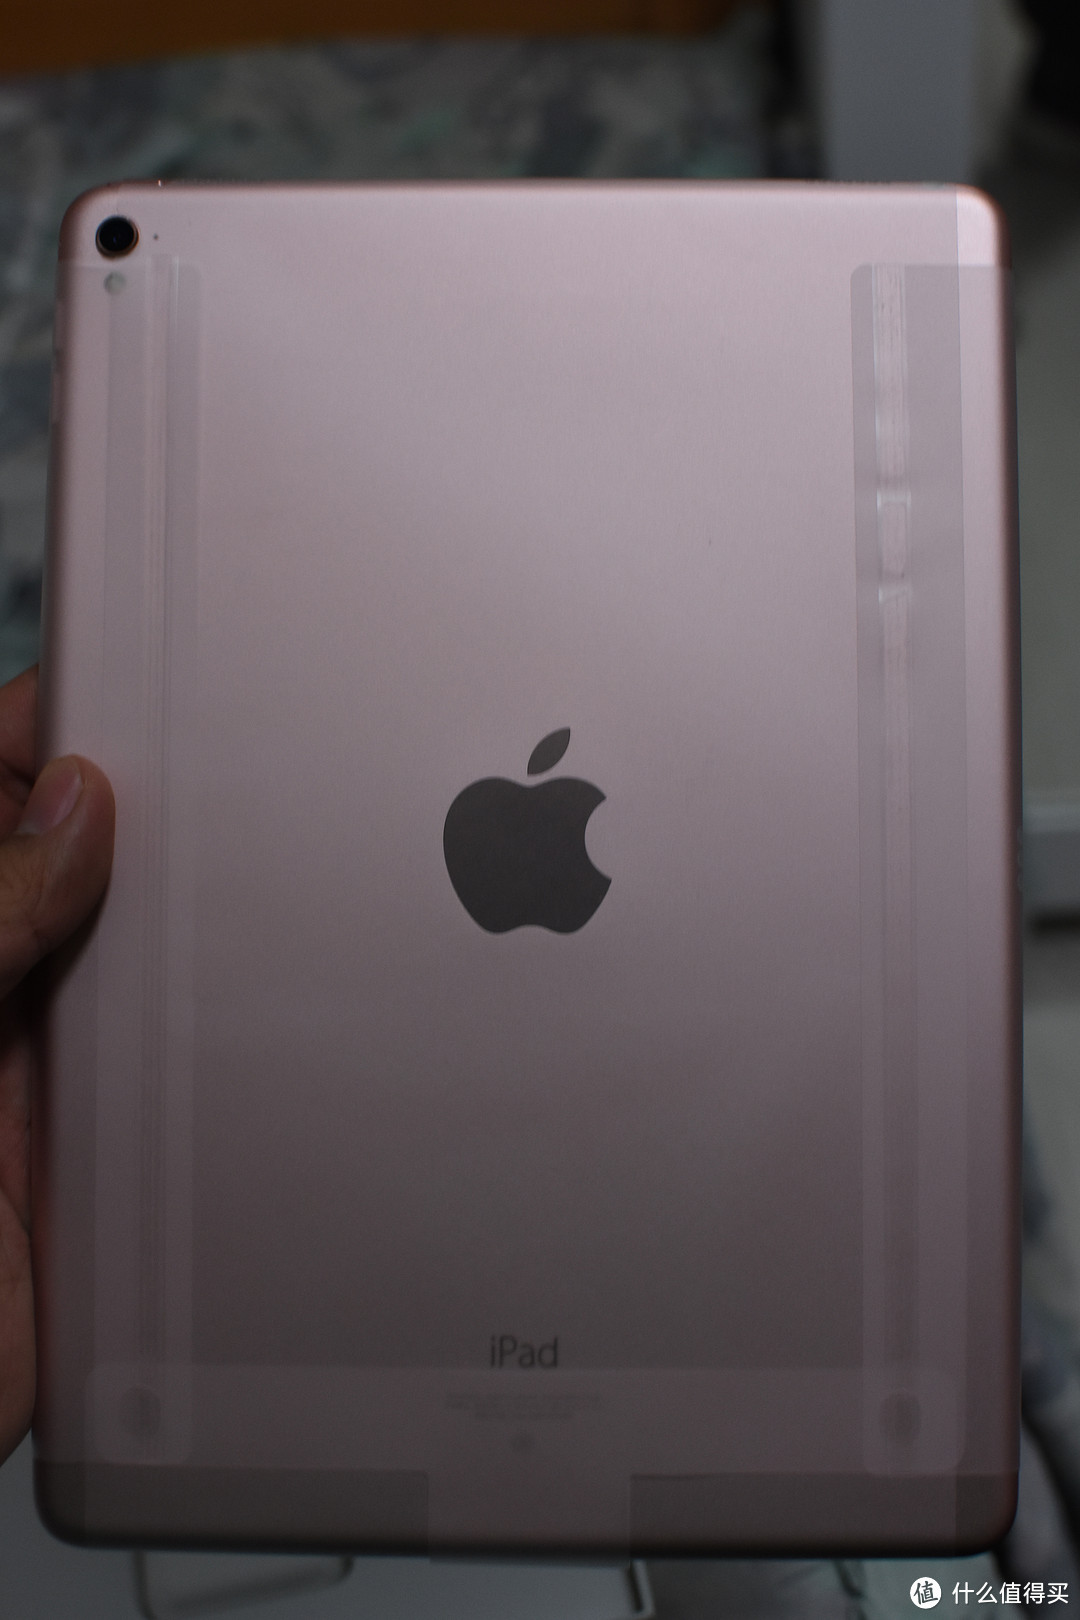 水果的以旧换新体验——iPhone 5S+iPad mini 换iPad Pro 9.7